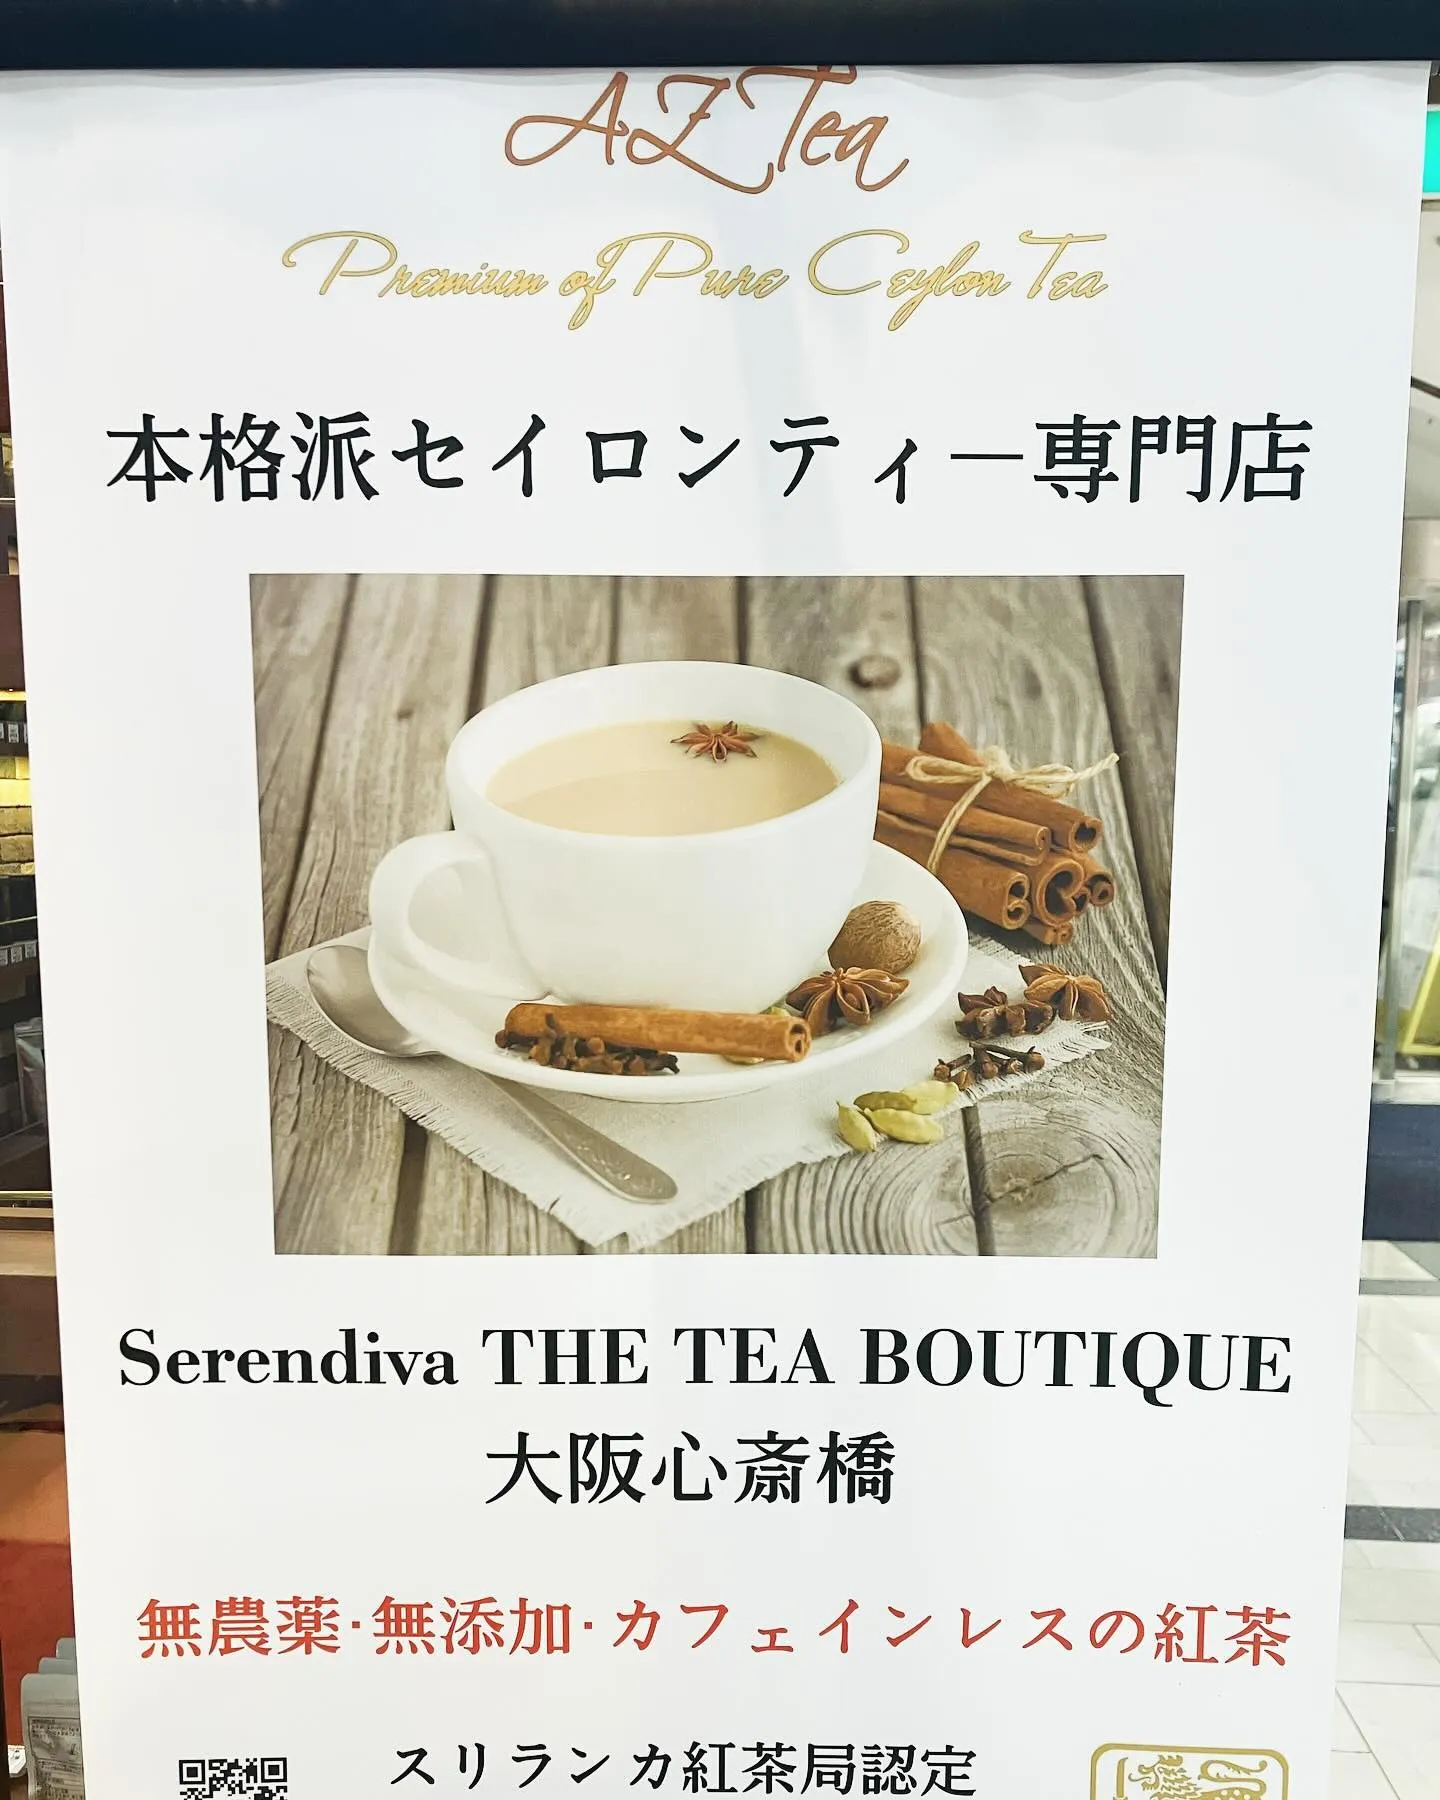 先日、心斎橋に無添加無農薬の紅茶のお店を発見しました😊